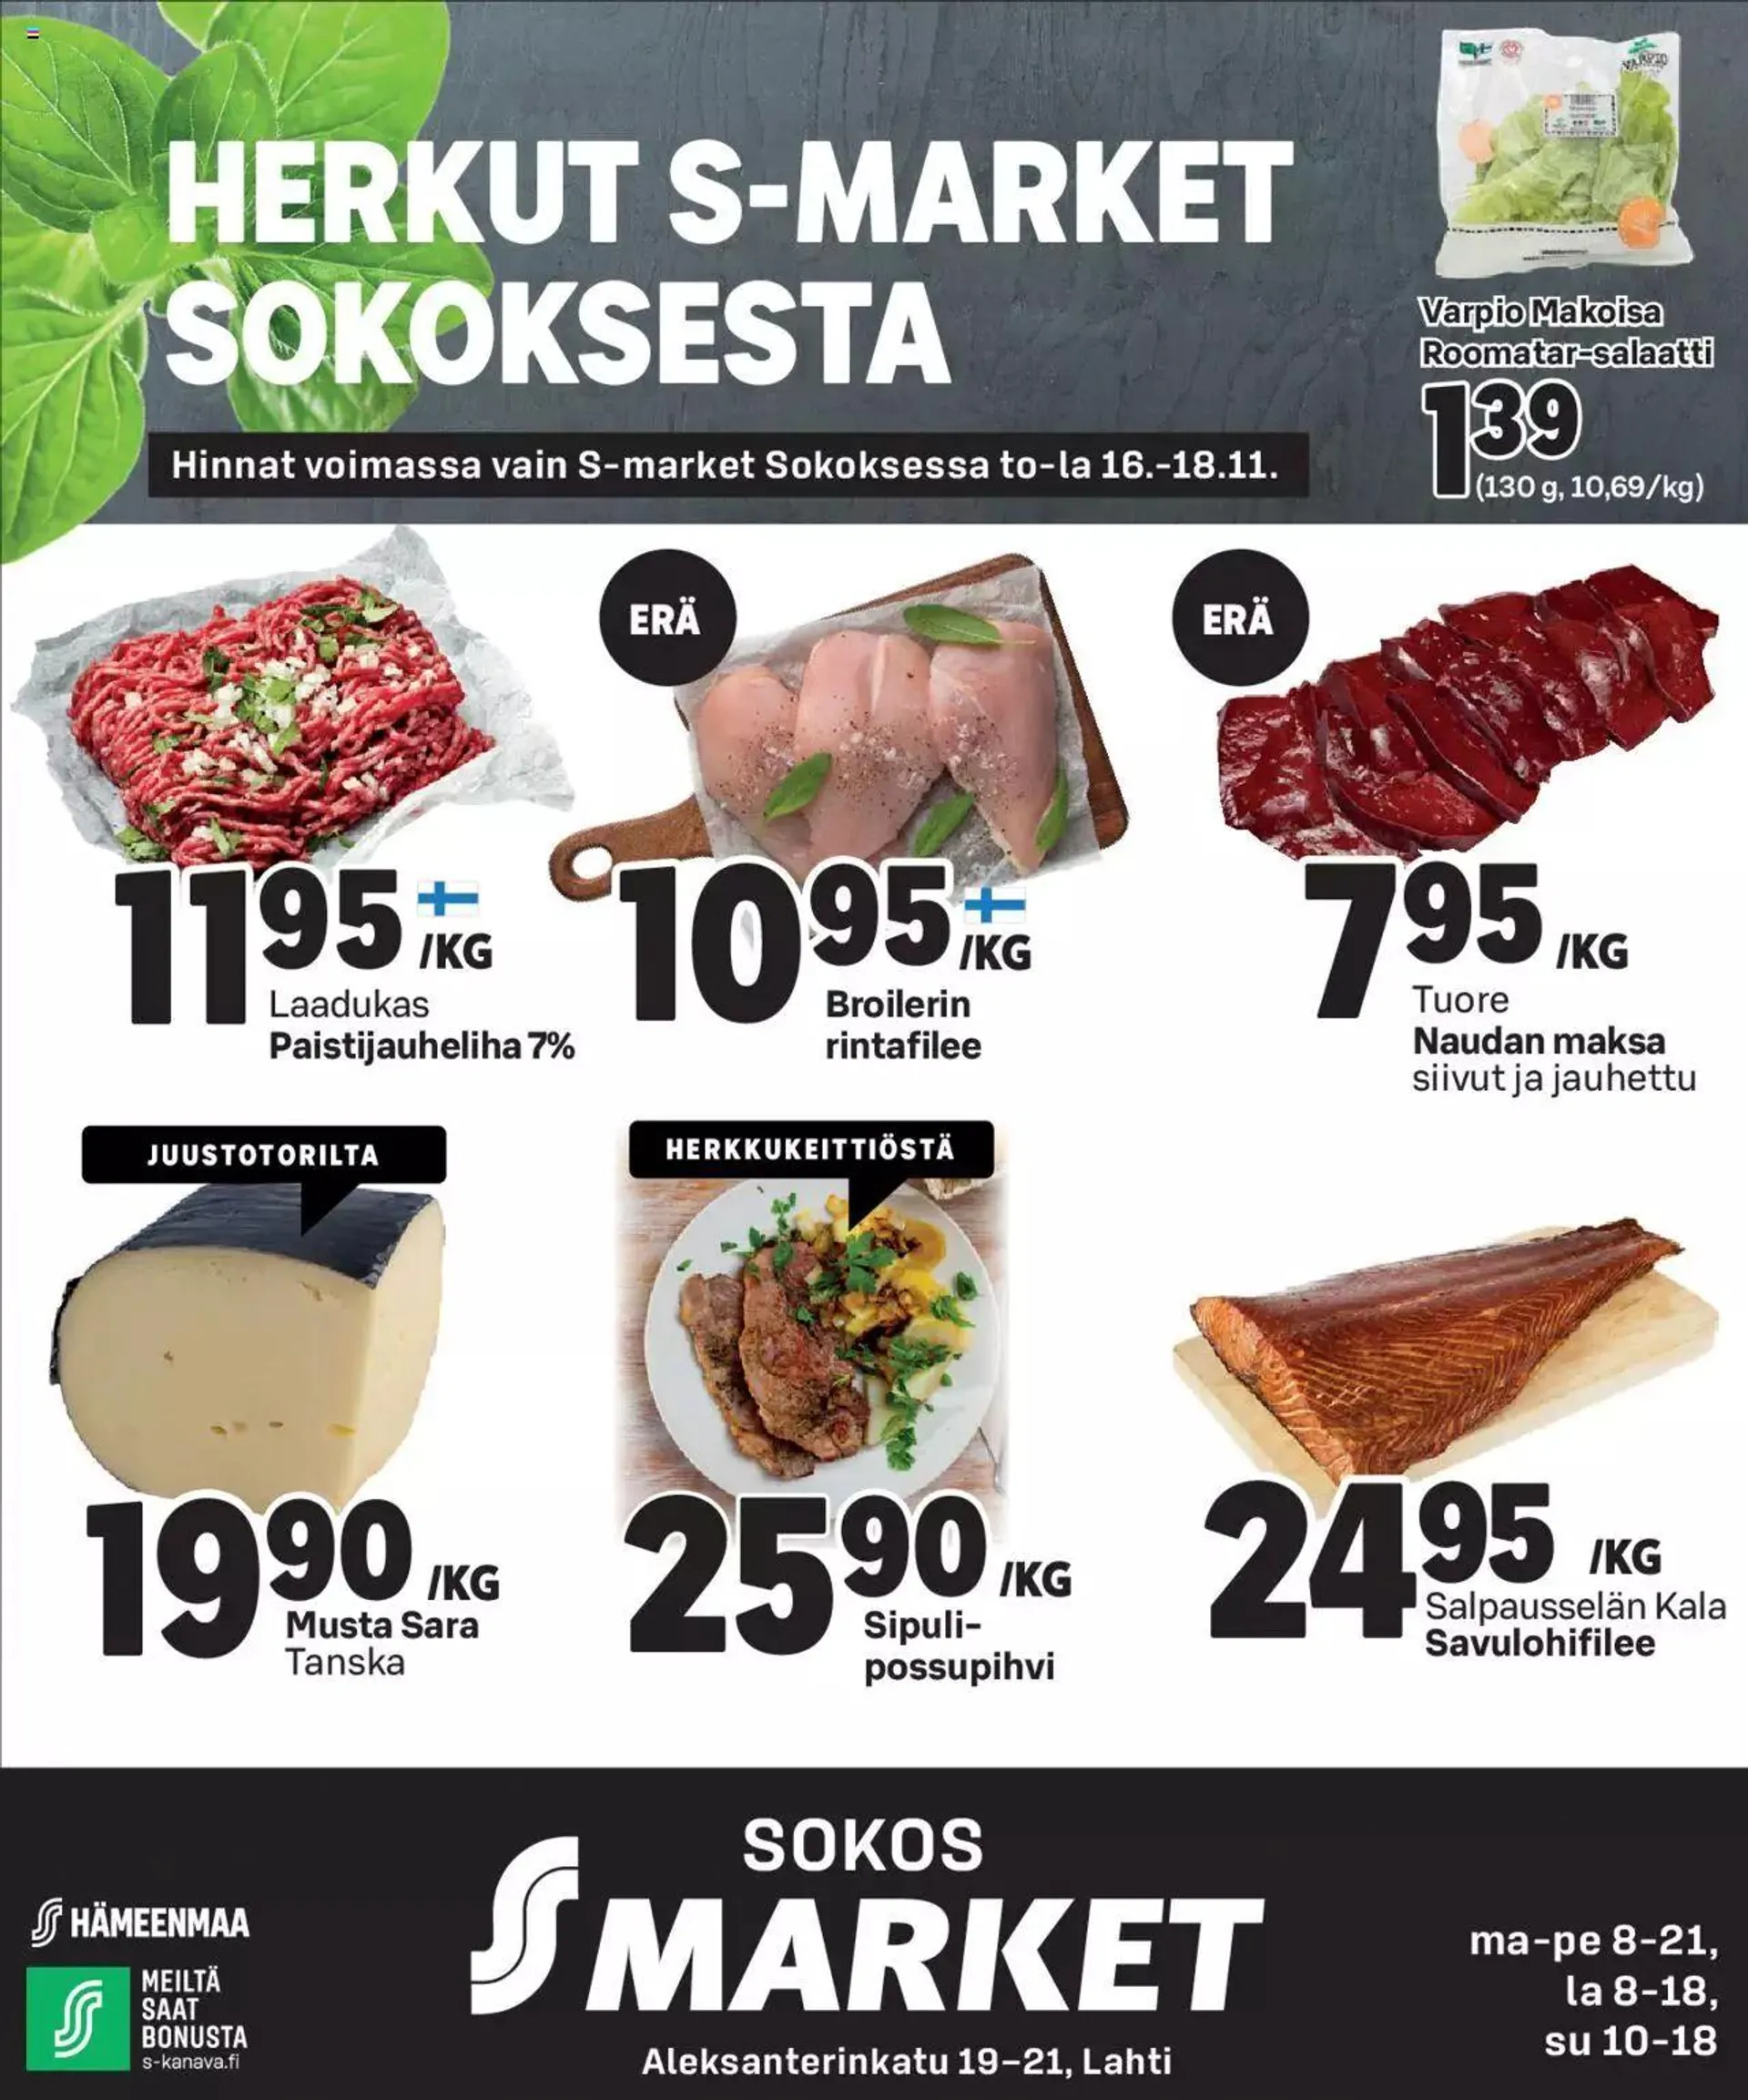 S-market Herkut S-market Sokoksesta